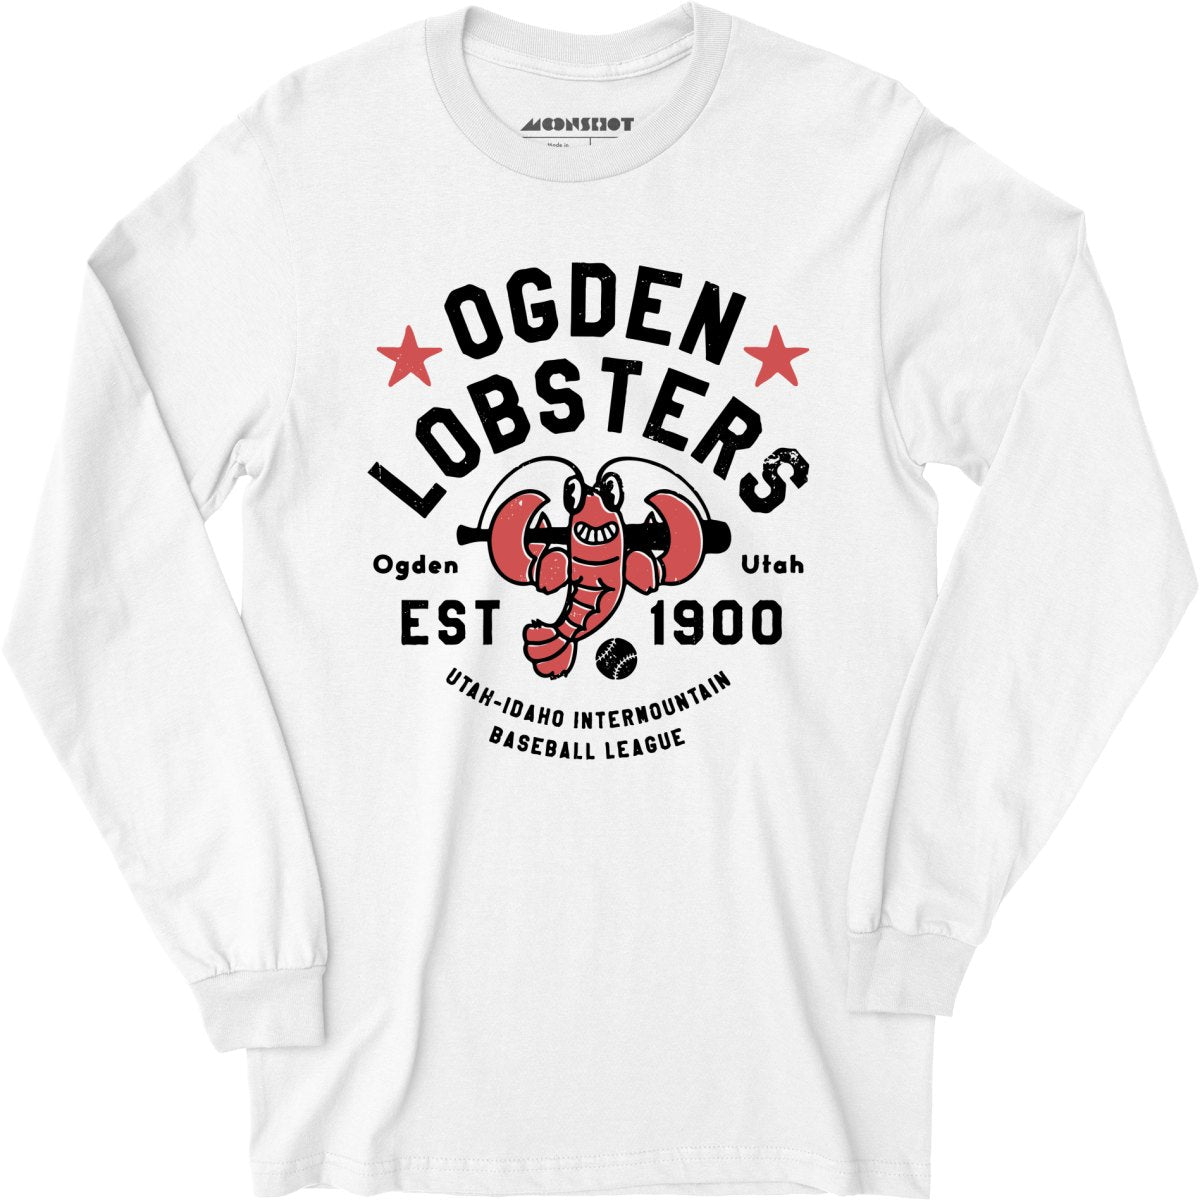 Ogden Lobsters - Utah - Vintage Defunct Baseball Teams - Long Sleeve T-Shirt